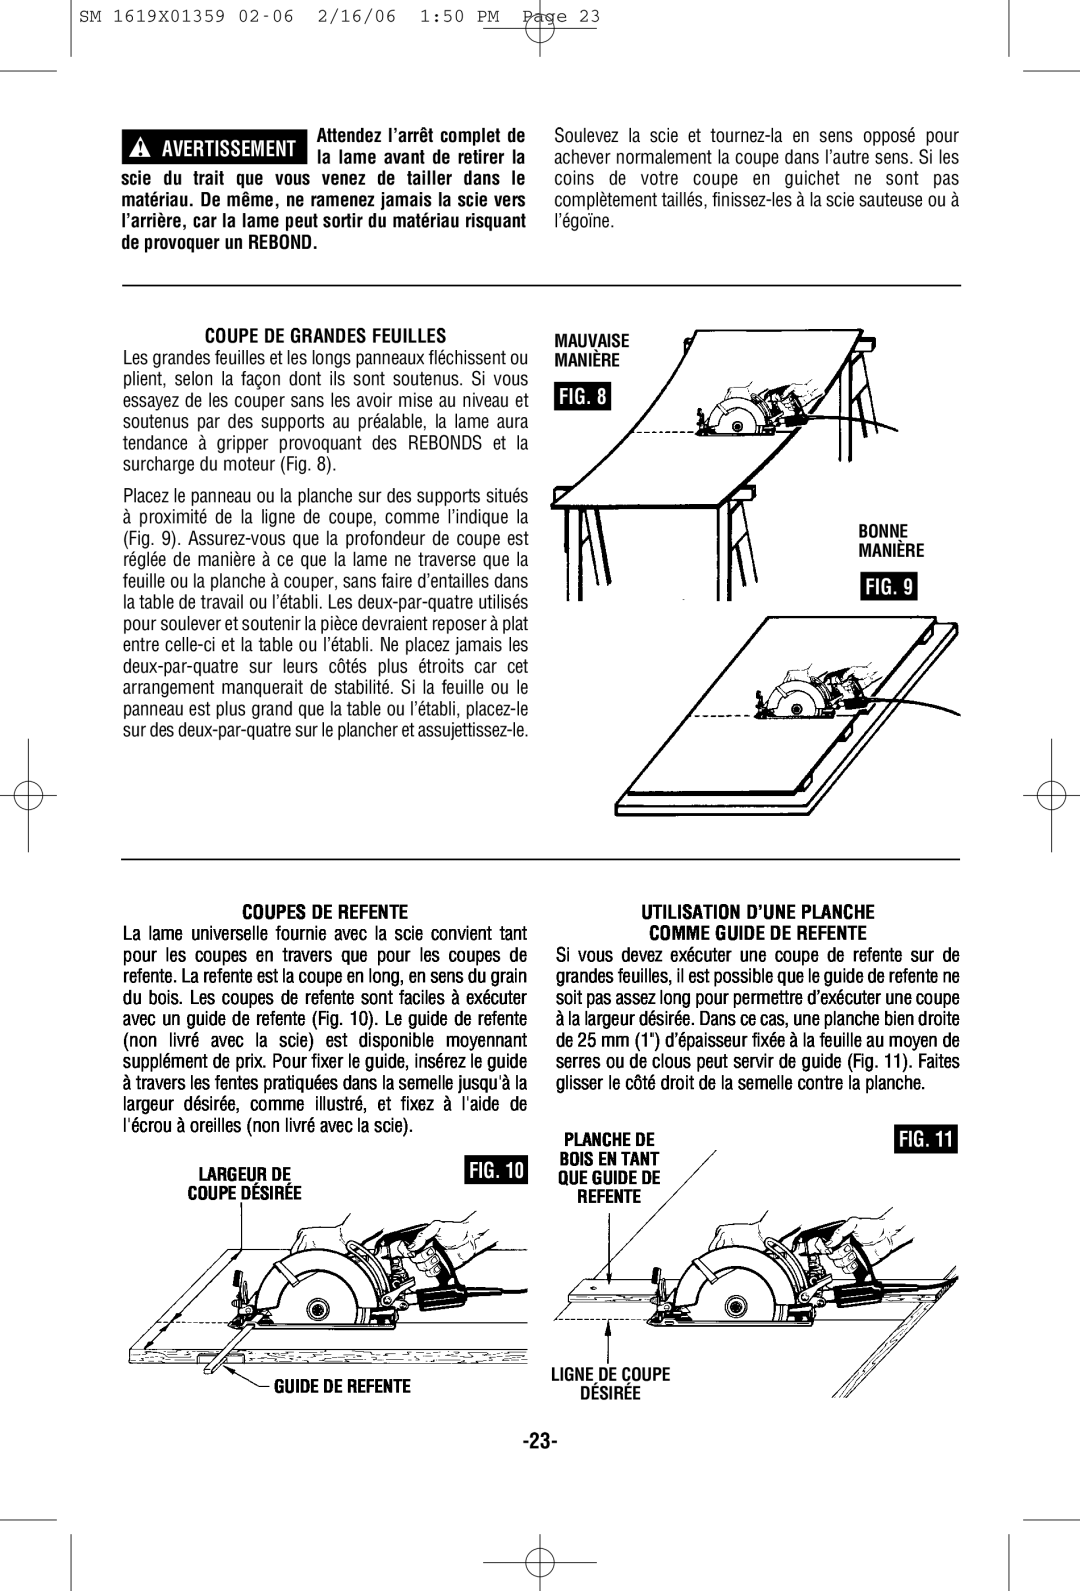 Skil HD5860 manual Coupe De Grandes Feuilles, Coupes De Refente, Utilisation D’Une Planche Comme Guide De Refente, Fig 